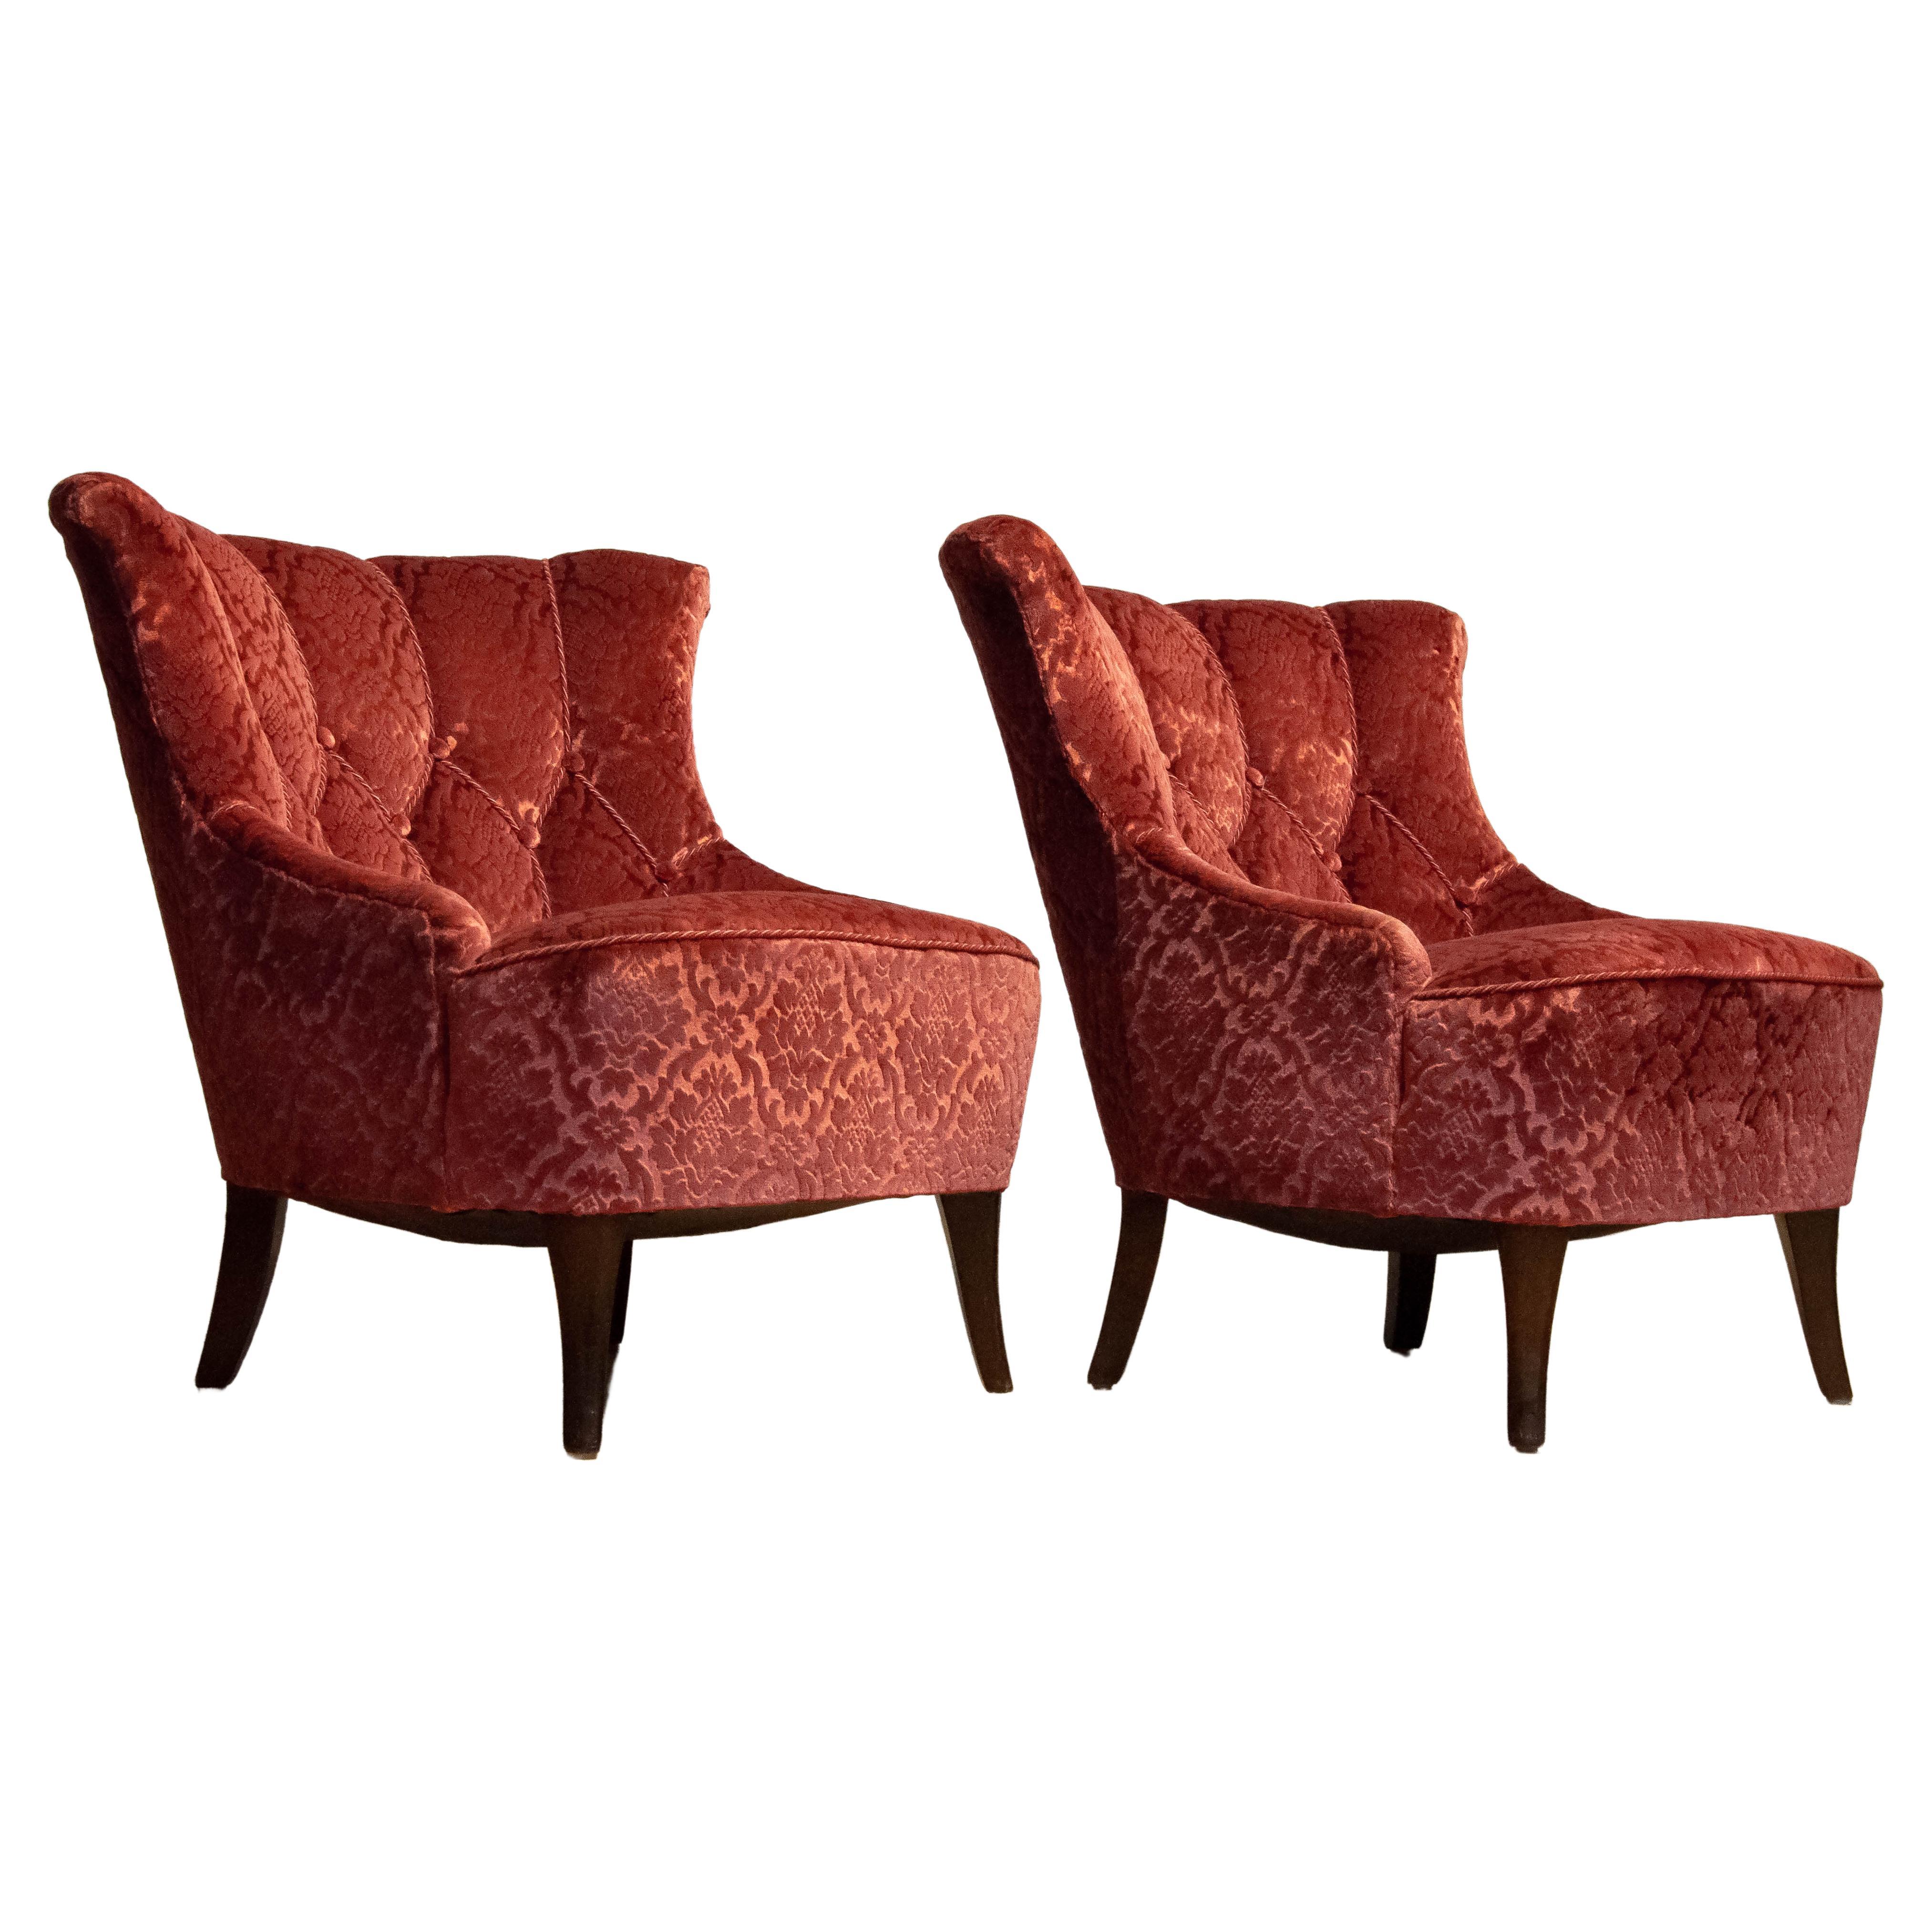 Pair 20th Century Napoleon III Slipper Chair Brique Ton Sur Ton Jacquard Velvet For Sale